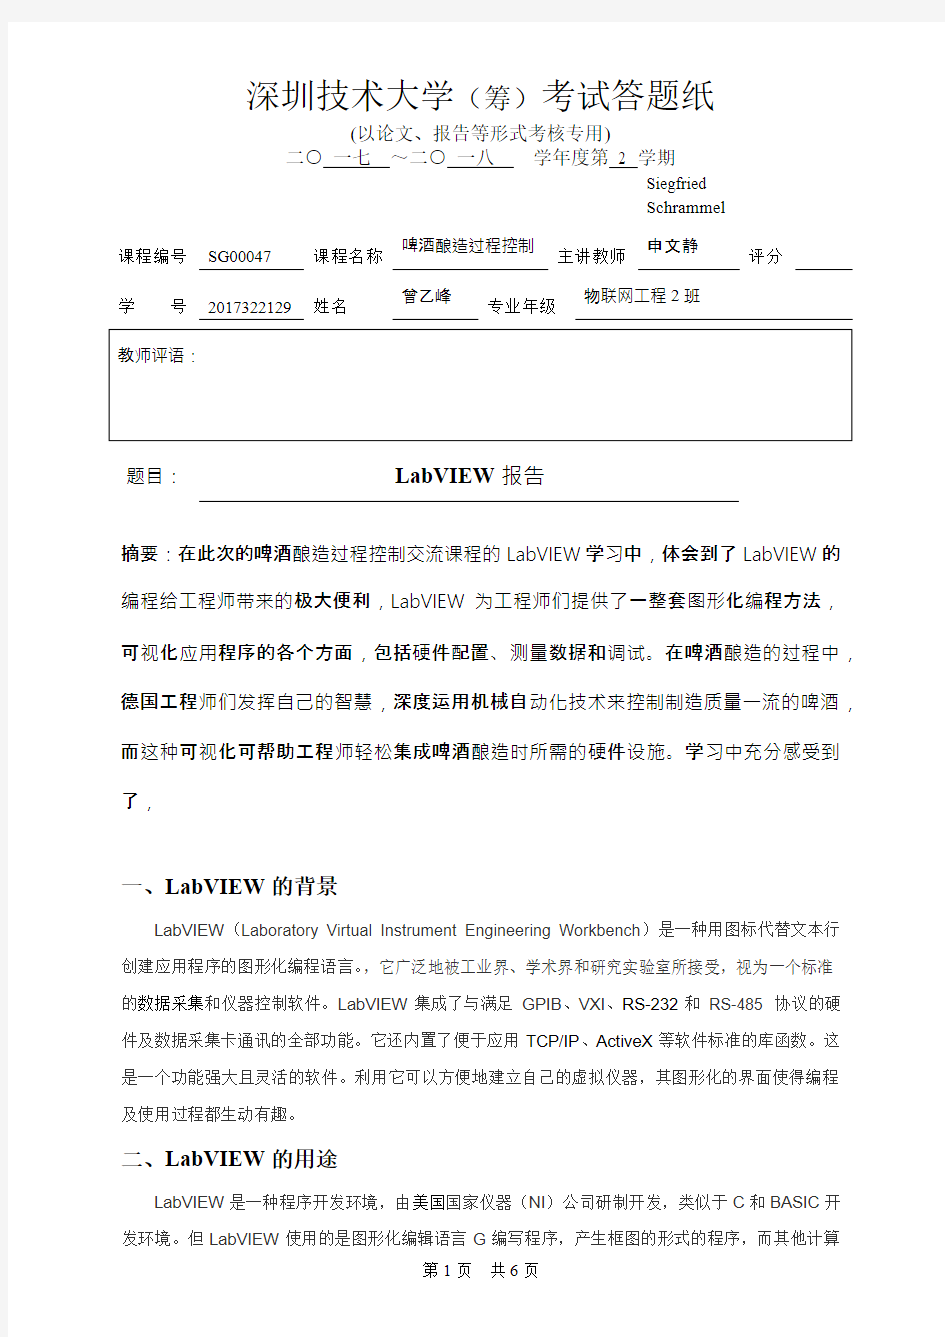 深圳技术大学(筹)考试答题纸